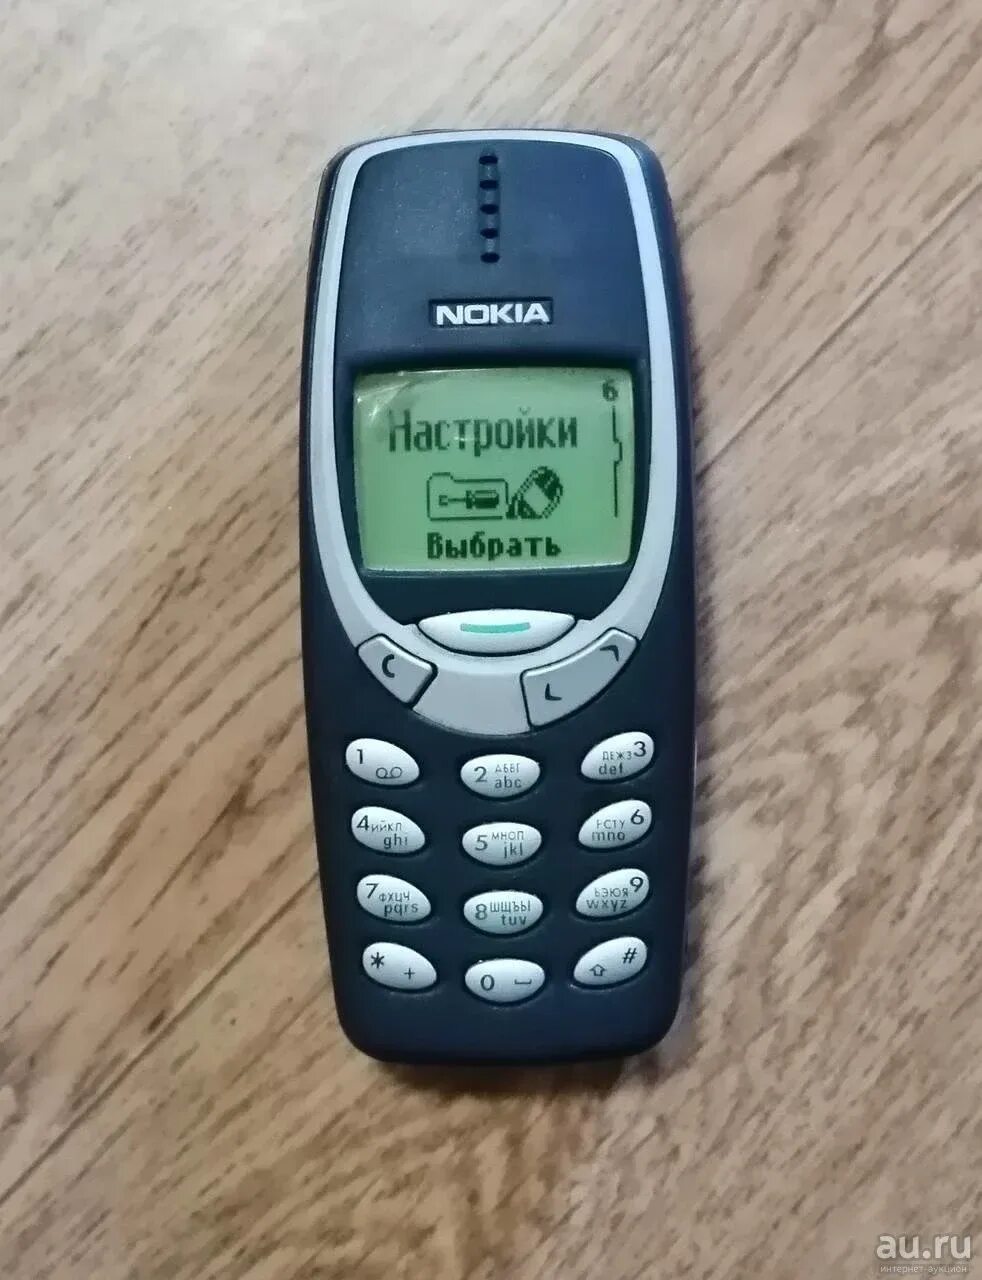 Купить нокиа 3310 оригинал. Экран нокиа 3310. Нокиа 3310 оригинал. Nokia 3310 оригинал. Nokia 3310 на весь экран.